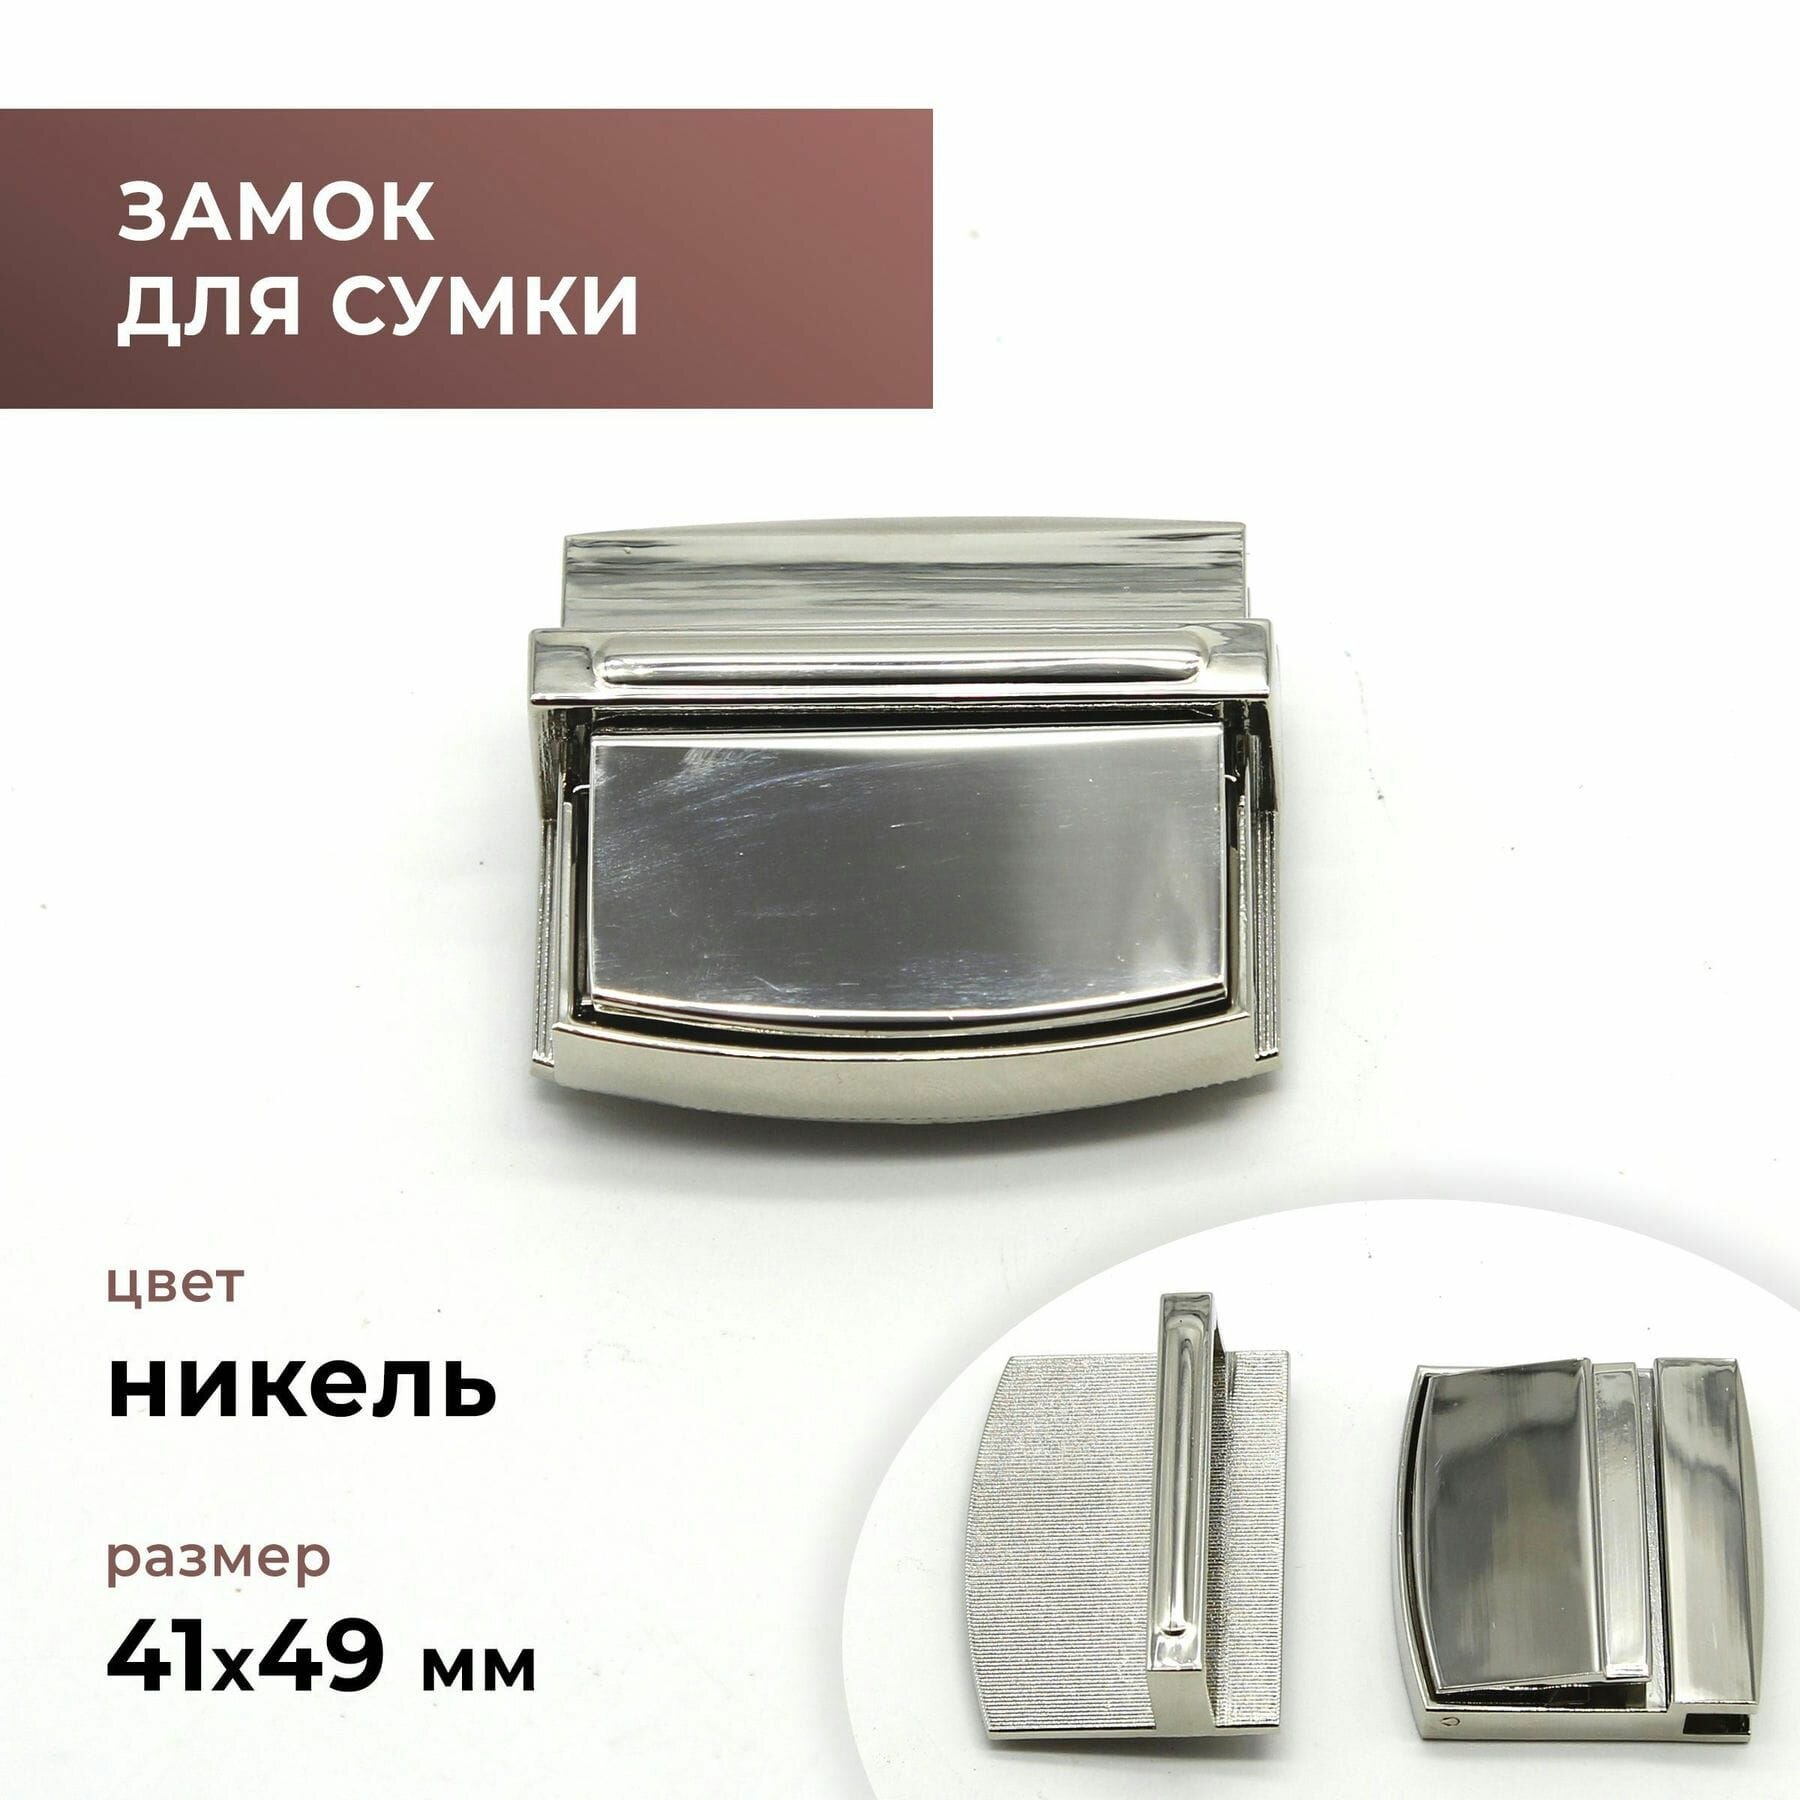 Застёжка (замок) для сумки серебристая (цвет серебро) 49х41 мм - фурнитура для сумок